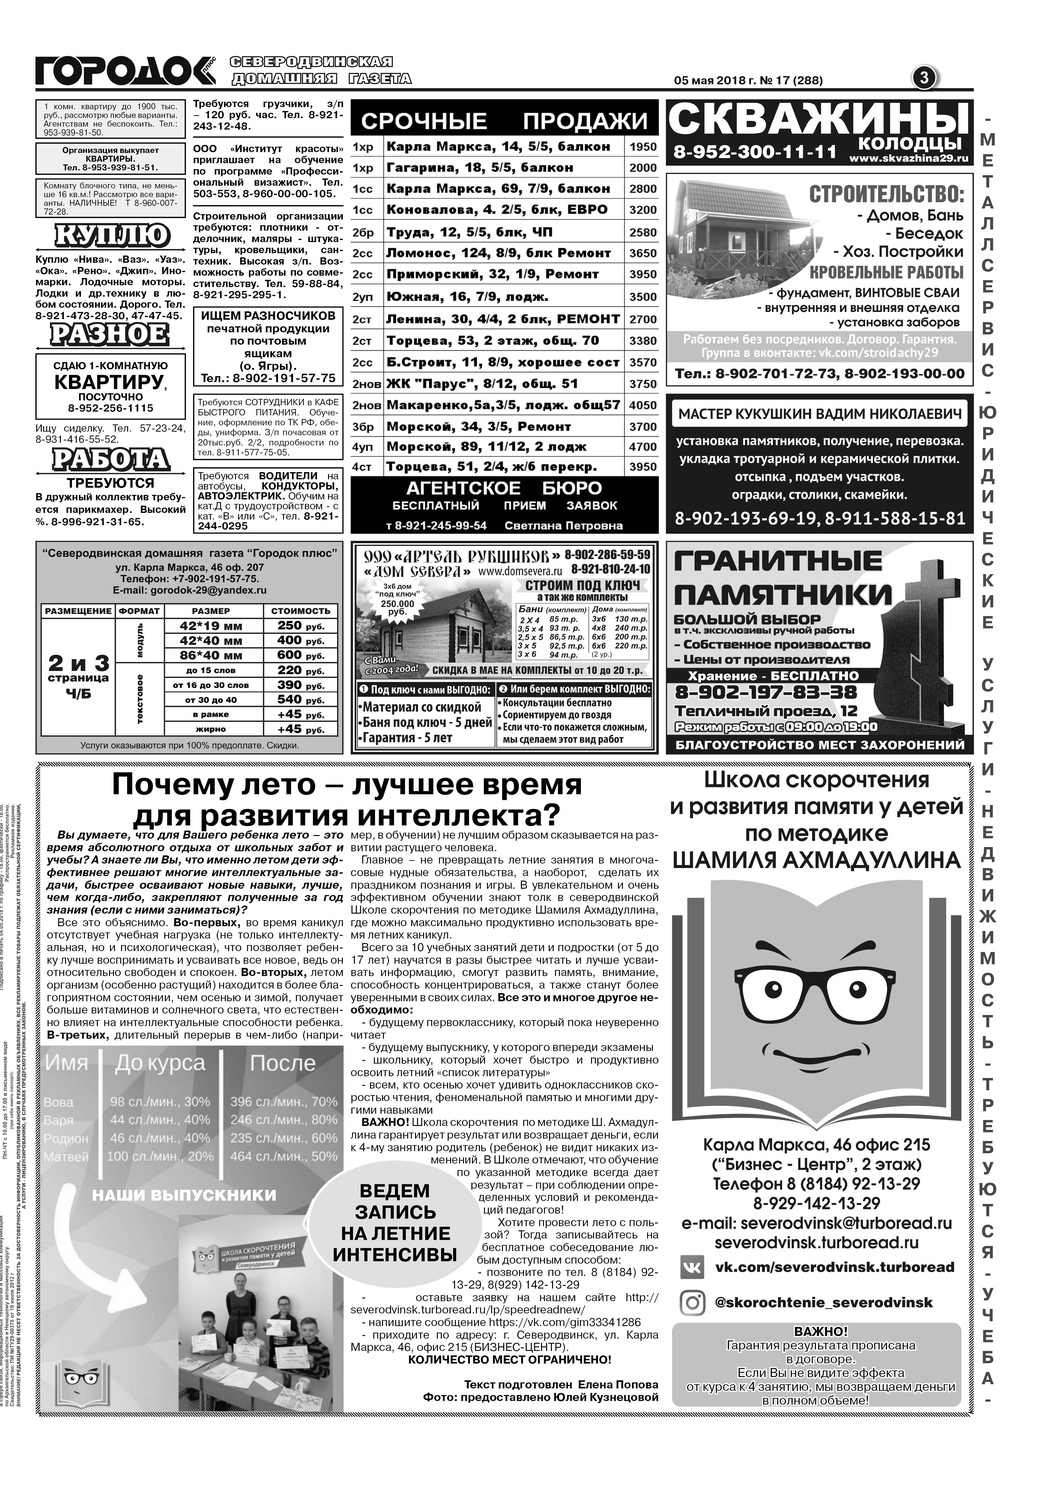 Городок плюс, выпуск номер 17 от 05 мая 2018 года, страница 3.